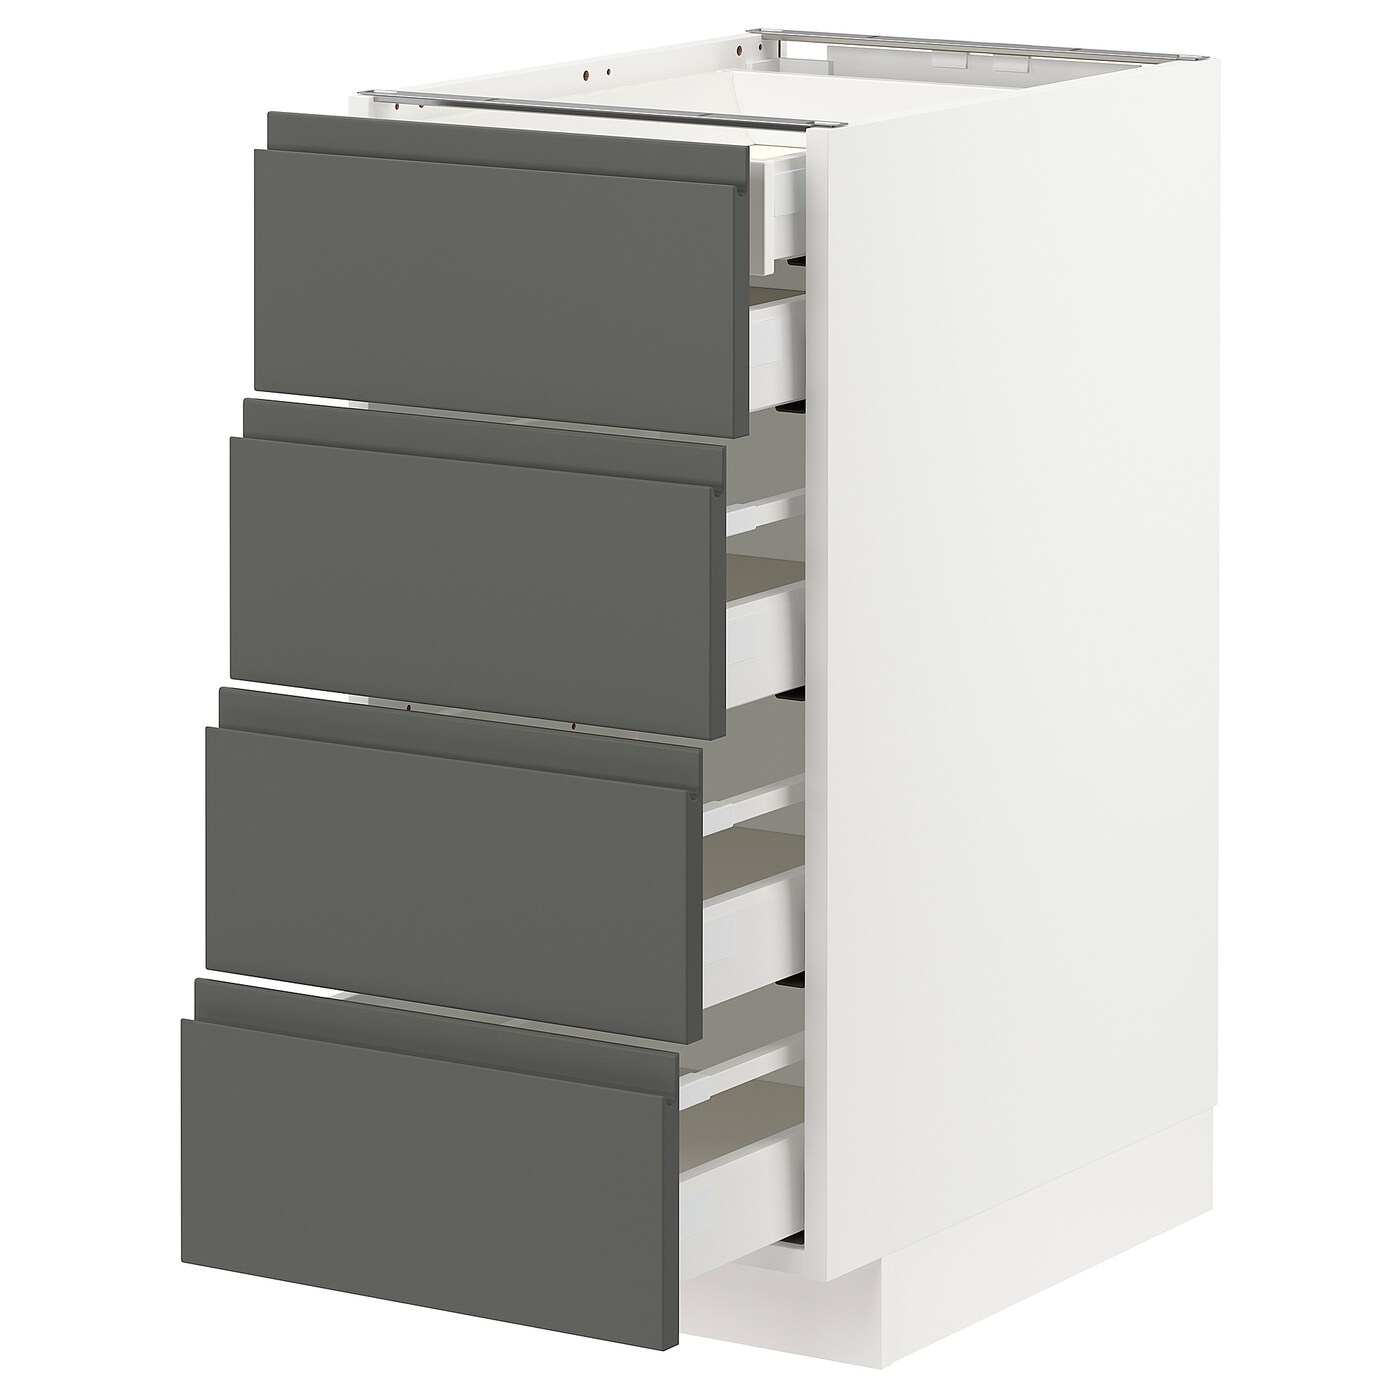 Напольный кухонный шкаф  - IKEA METOD MAXIMERA, 88x62x40см, белый/темно-серый, МЕТОД МАКСИМЕРА ИКЕА